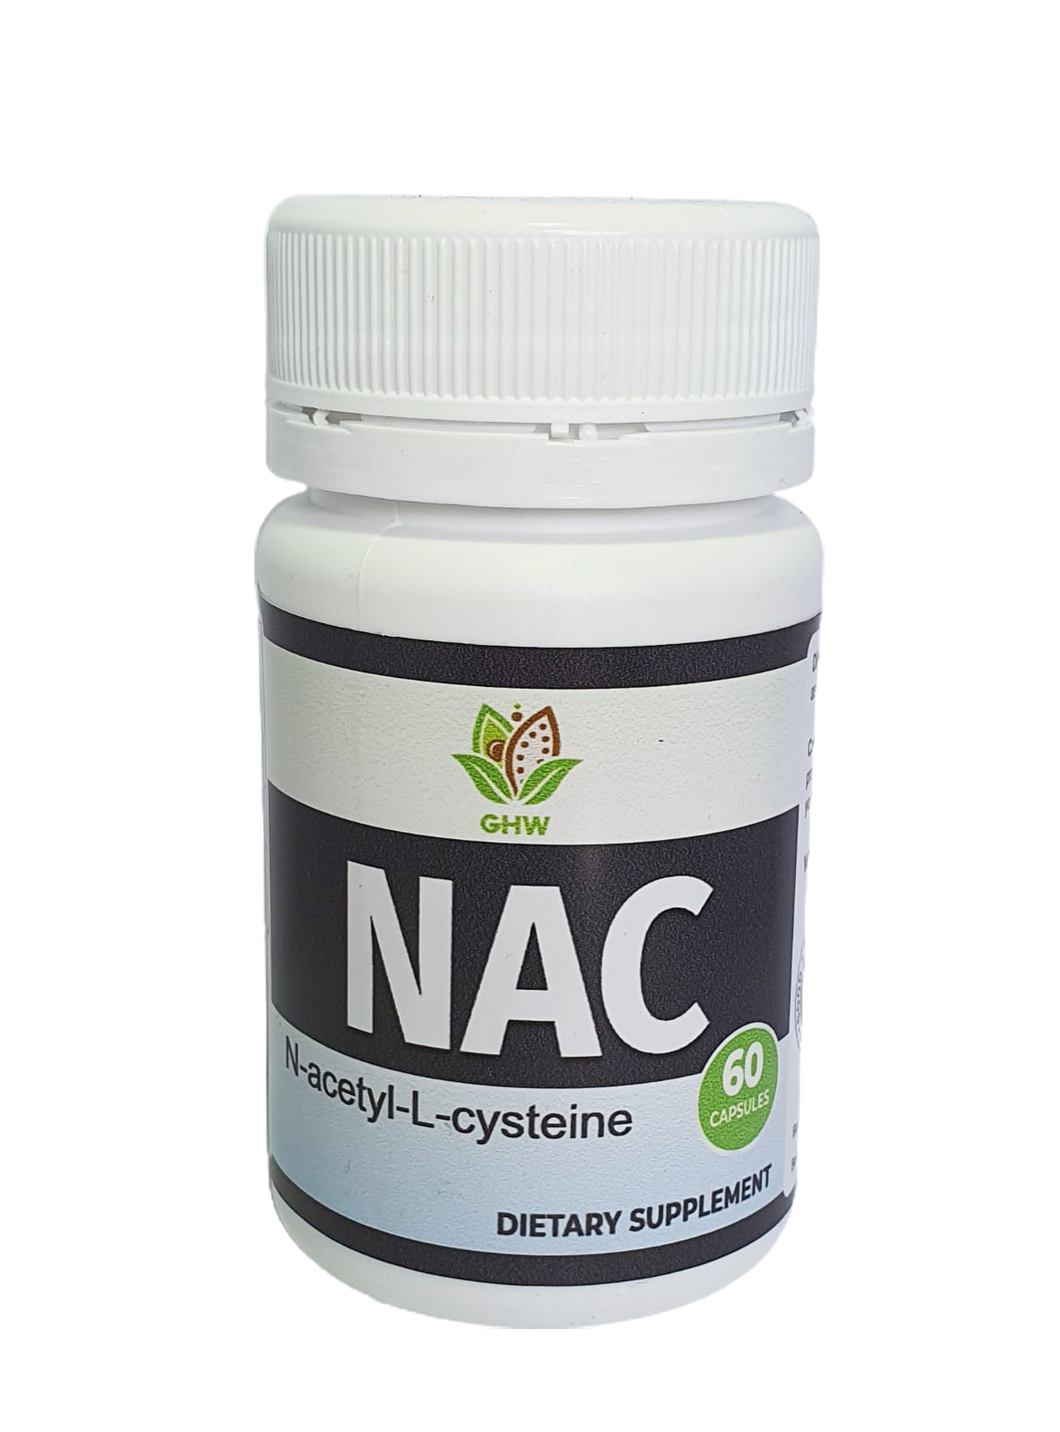 NAC (N-acetylcysteine) 600mg